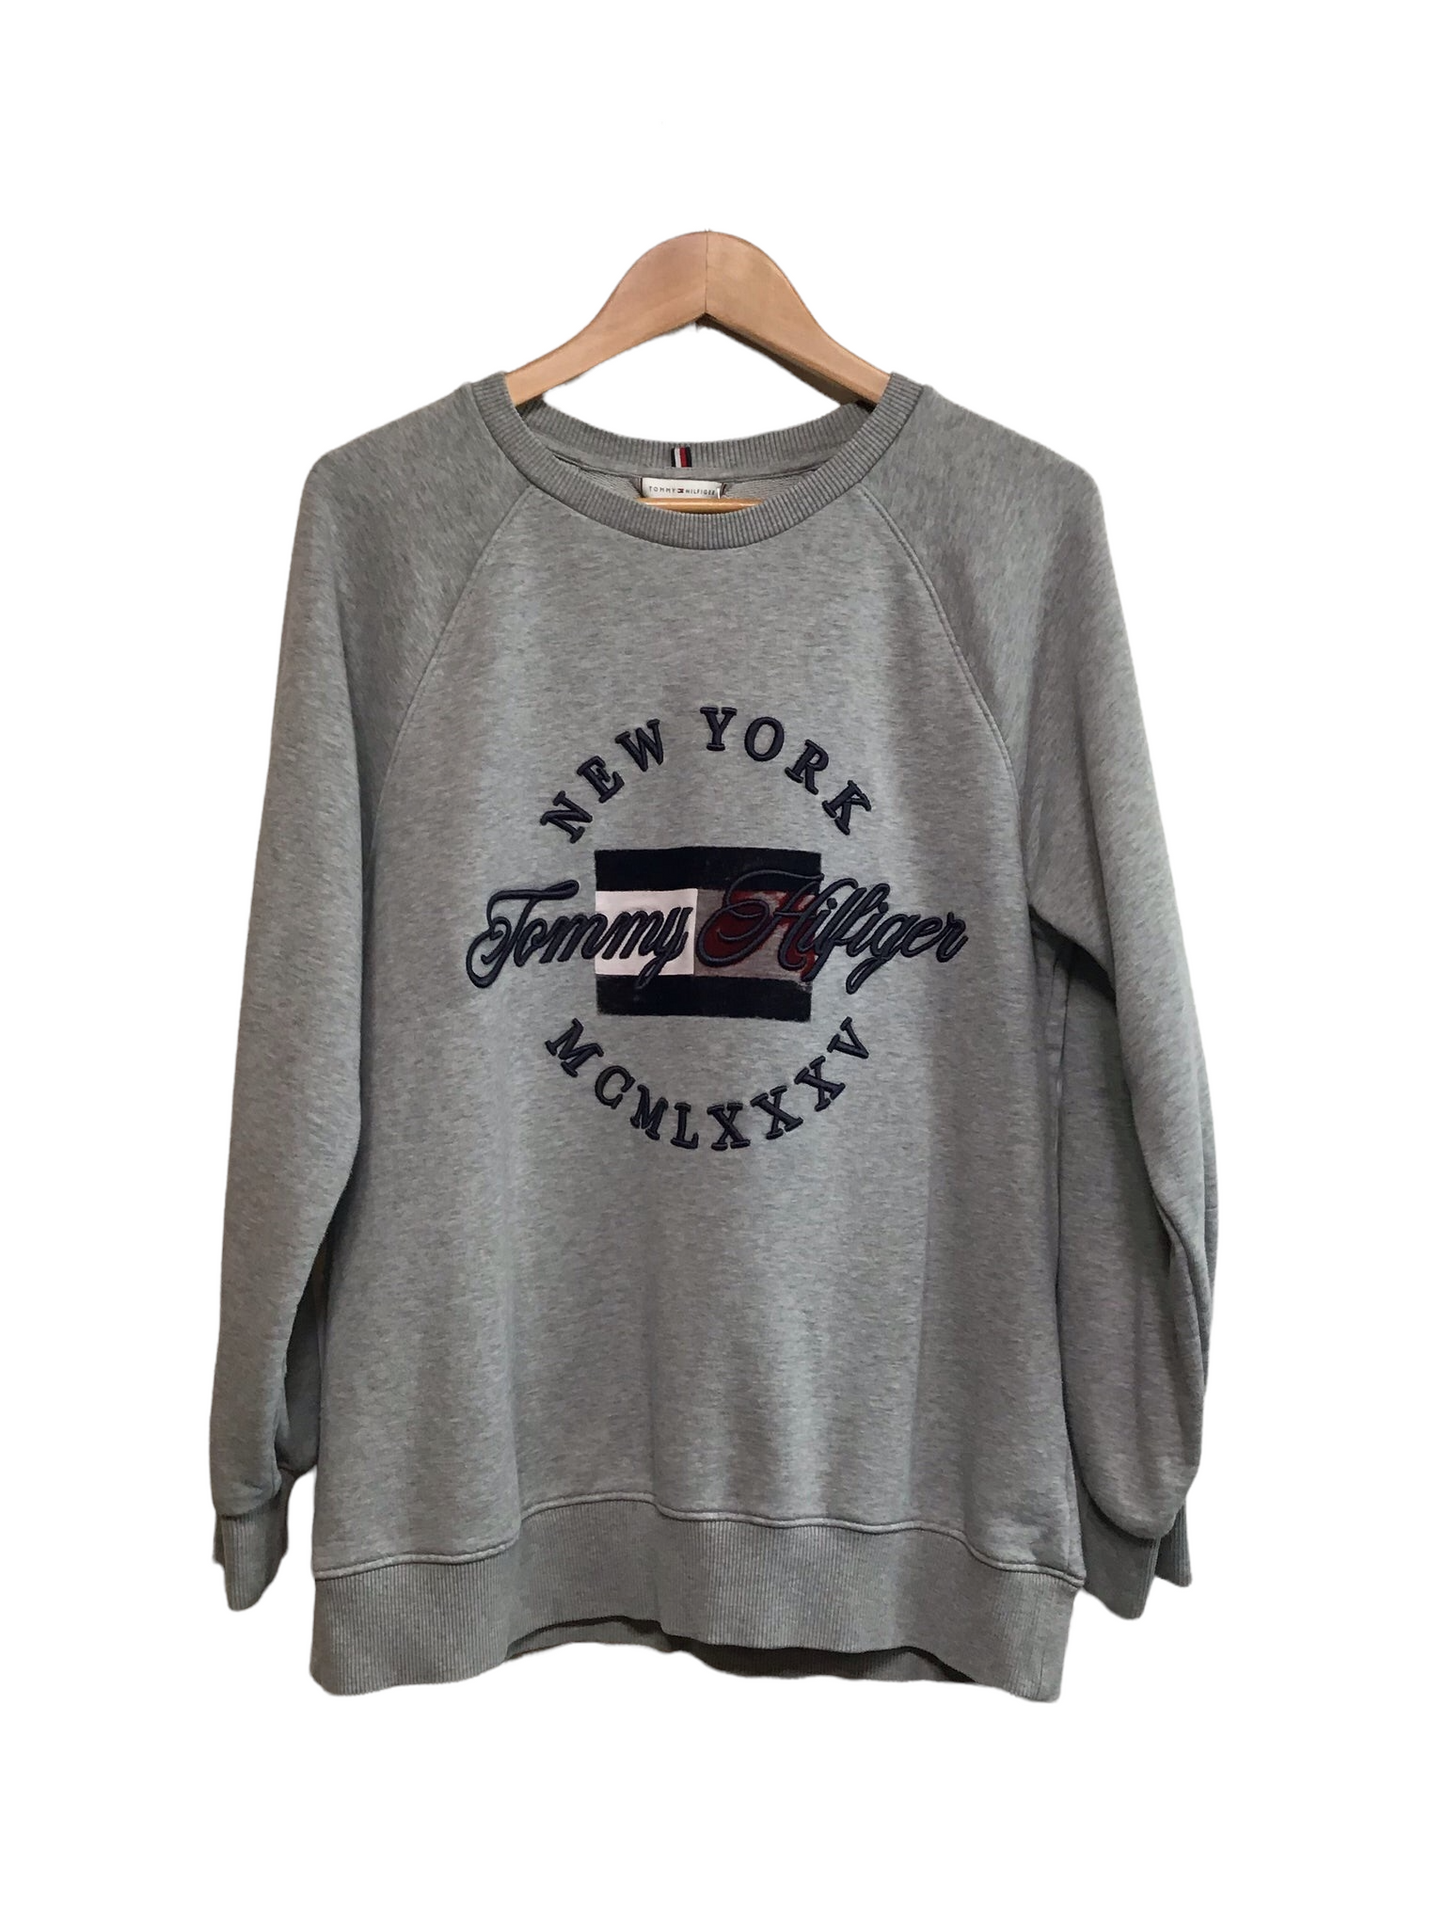 Tommy Hilfiger Sweatshirt (Size M)